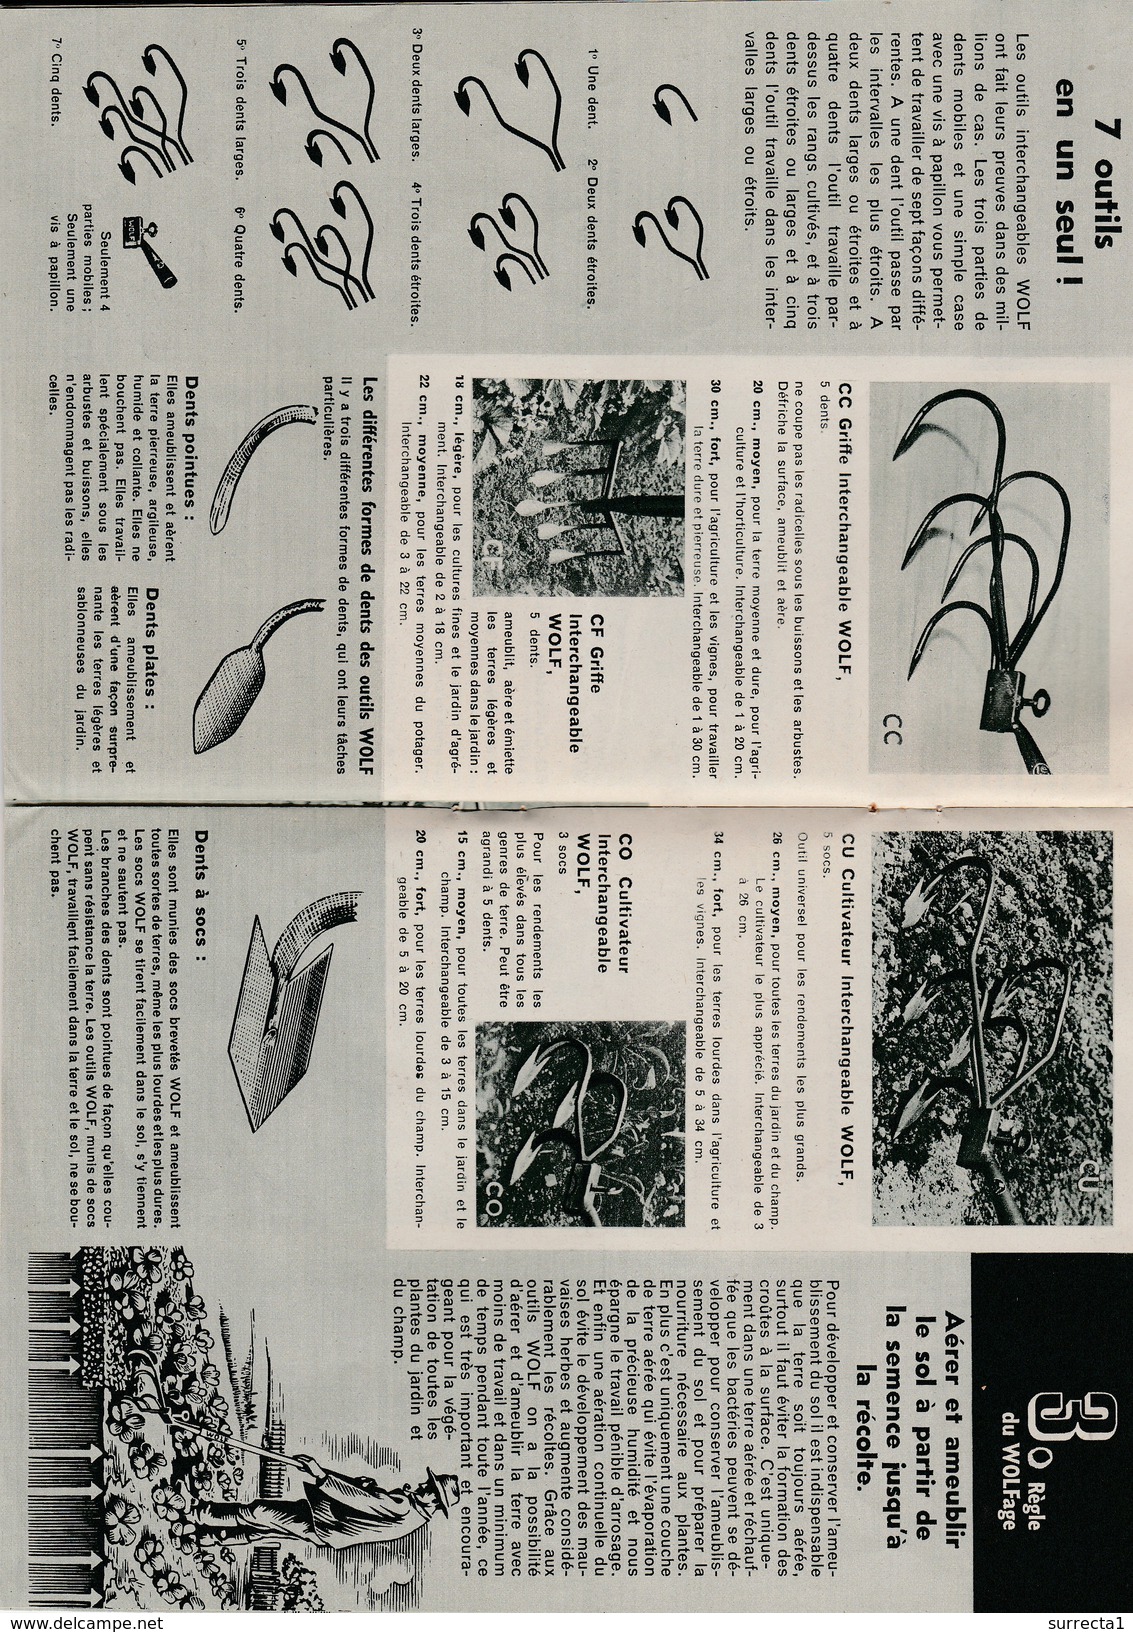 Catalogue 16 Pages 1949 Outillage Agricole WOLF Techniques/photos/dessins/conseils / CLERGET / Dijon 21 Côte D'Or - Matériel Et Accessoires